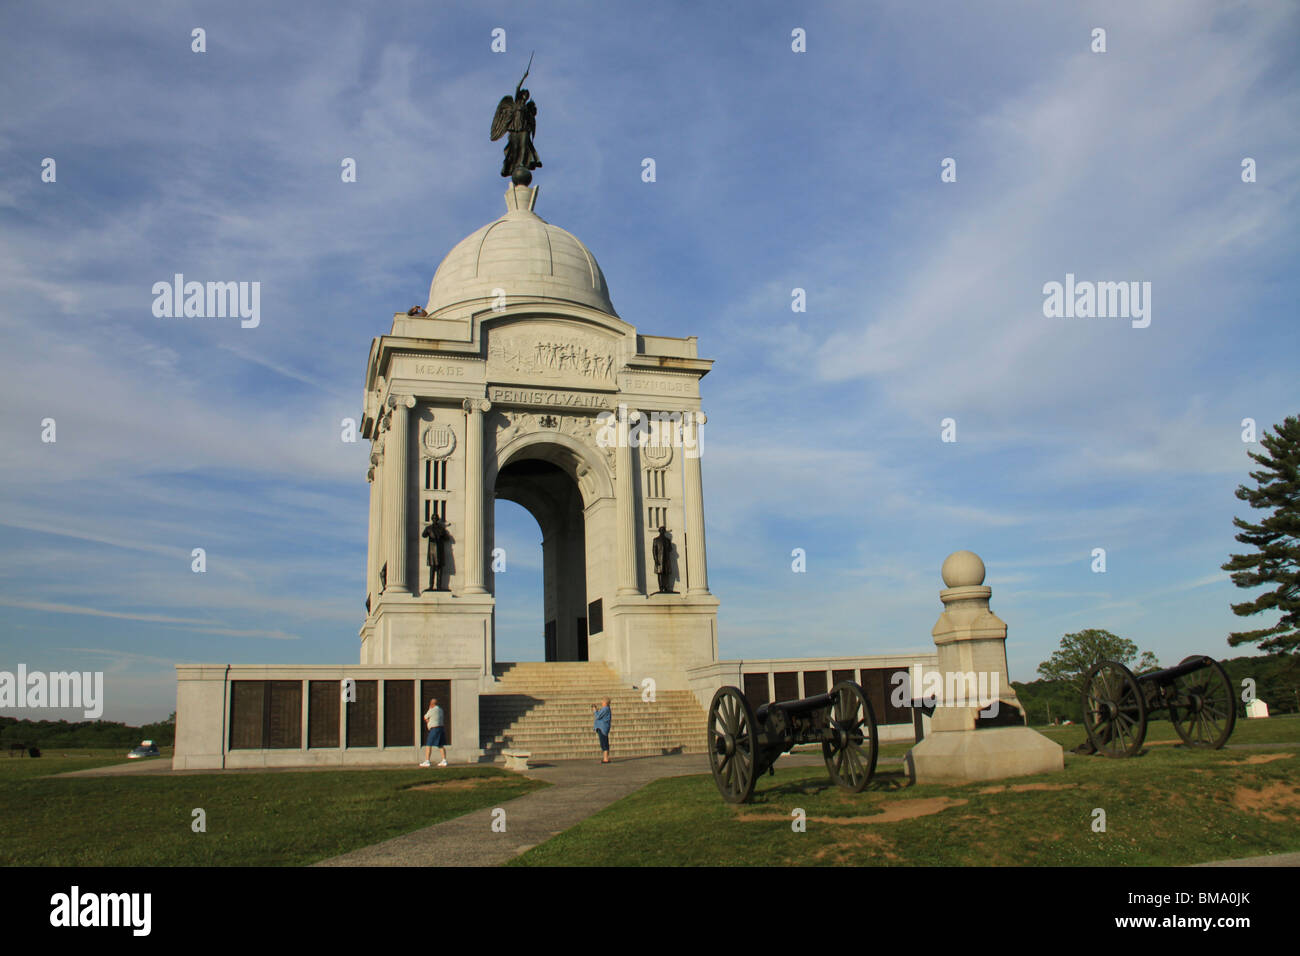 Pennsylvania Memorial at Gettysburg, PA Stock Photo